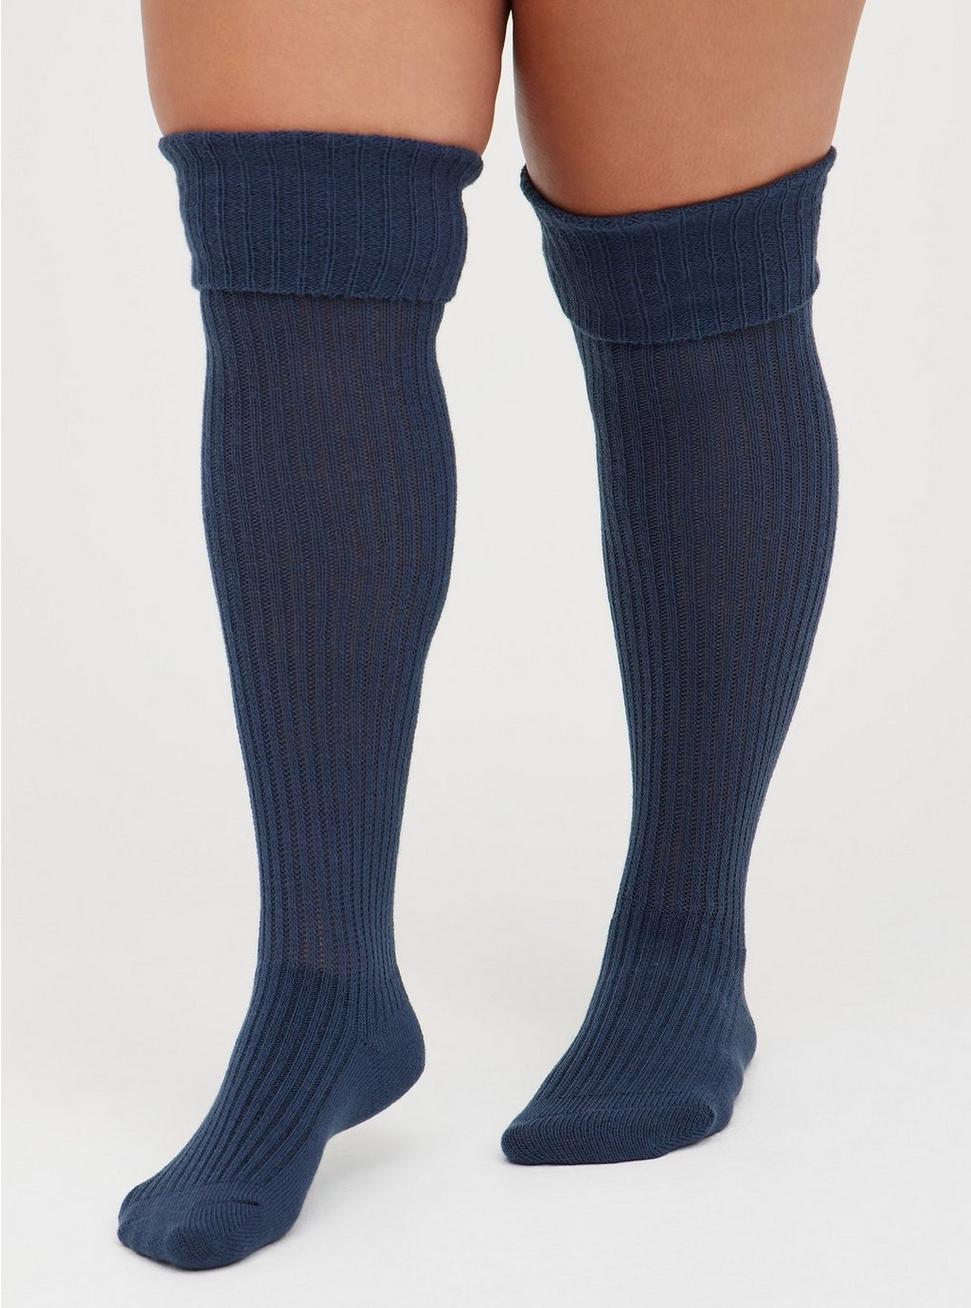 candy minerva add photo torrid knee high socks